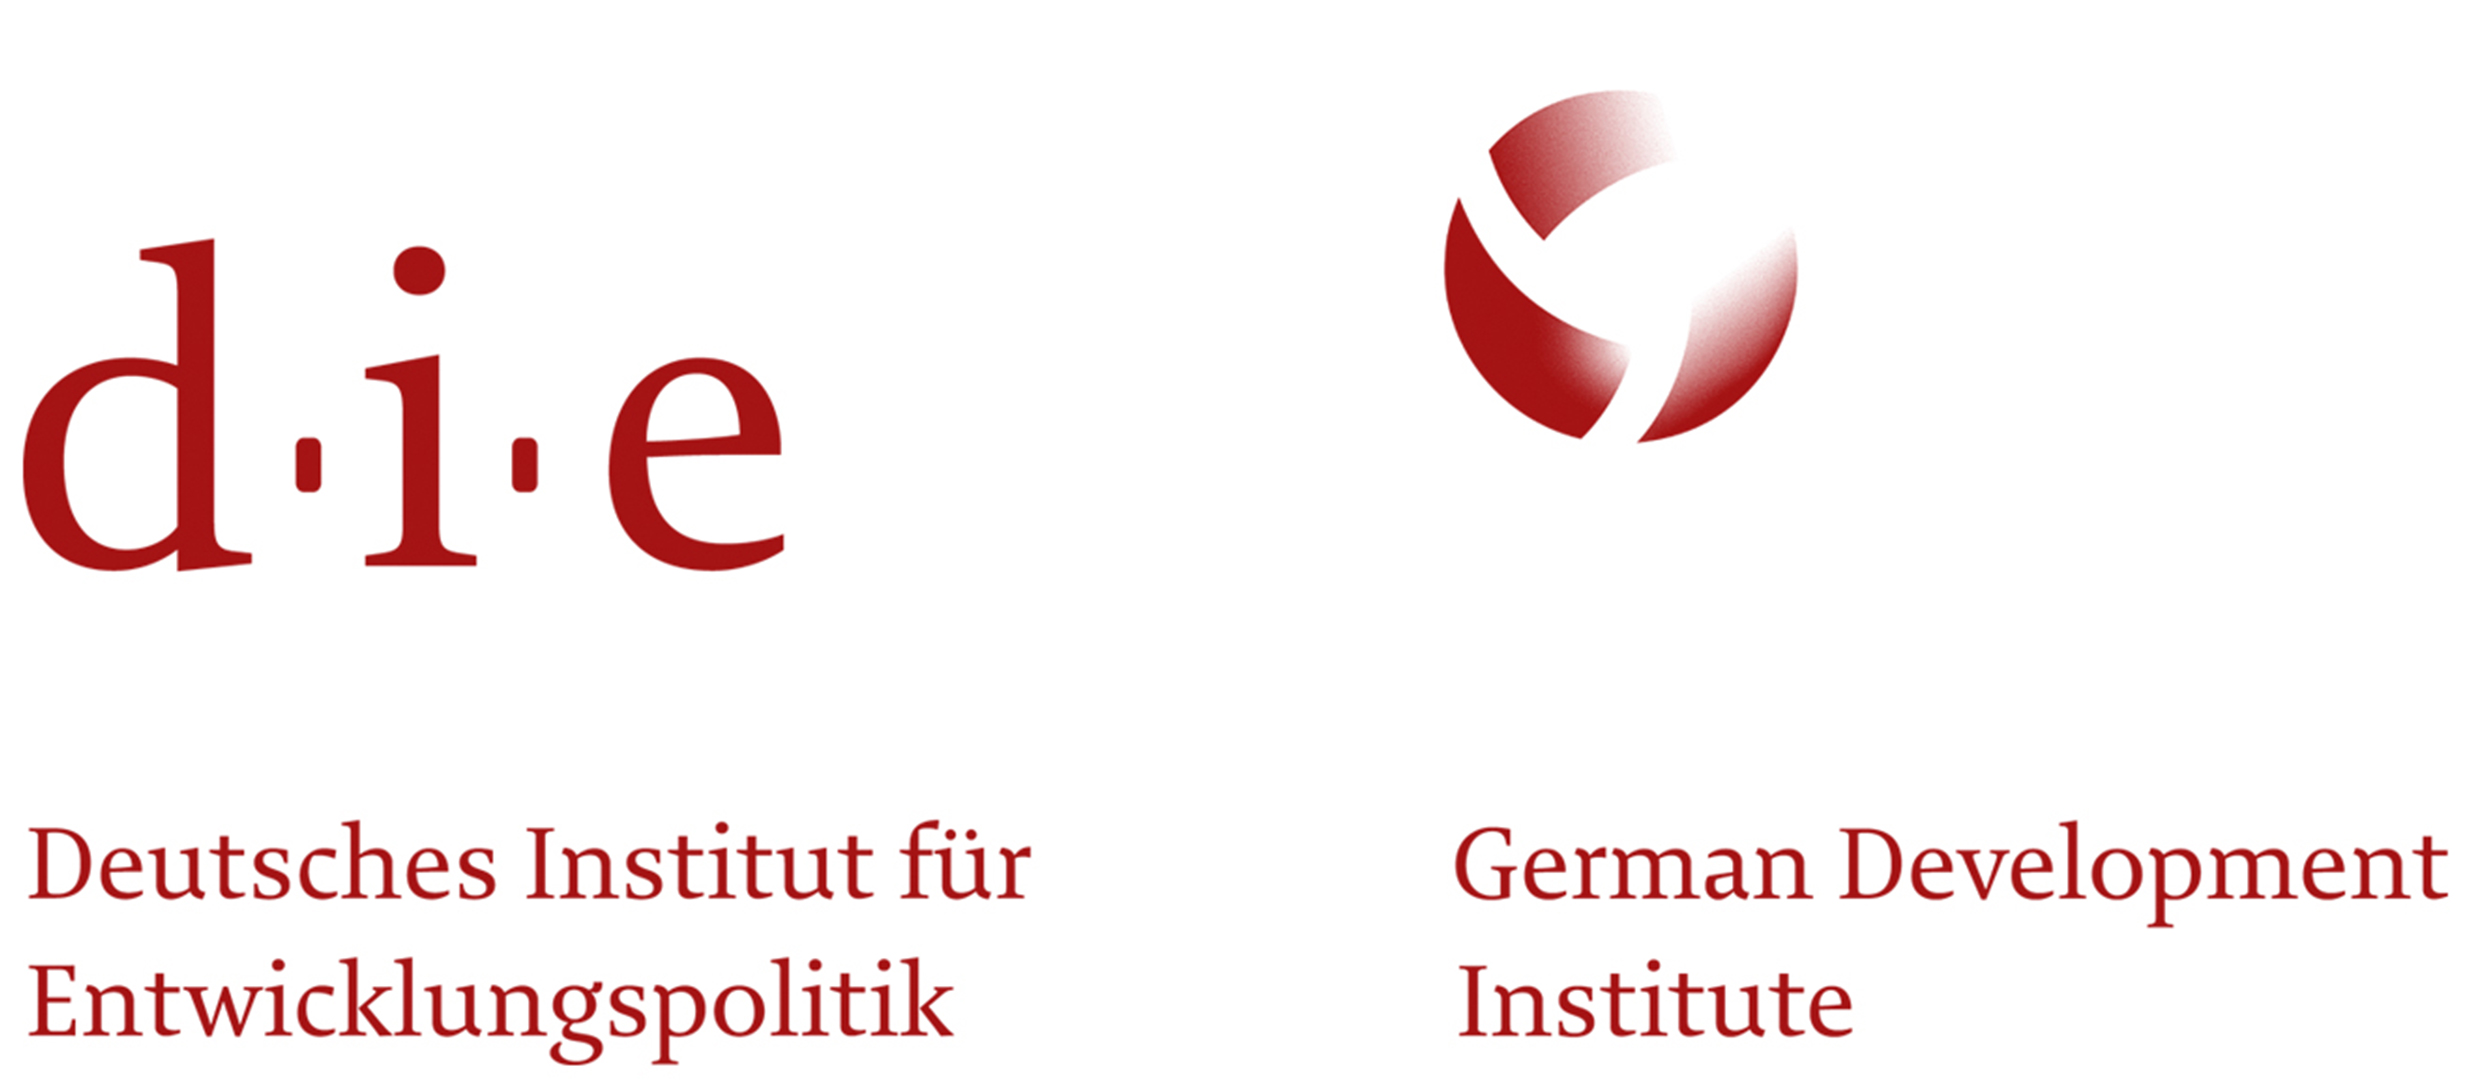 german-development-institute-deutsches-institut-fur-entwicklungspolitik-die